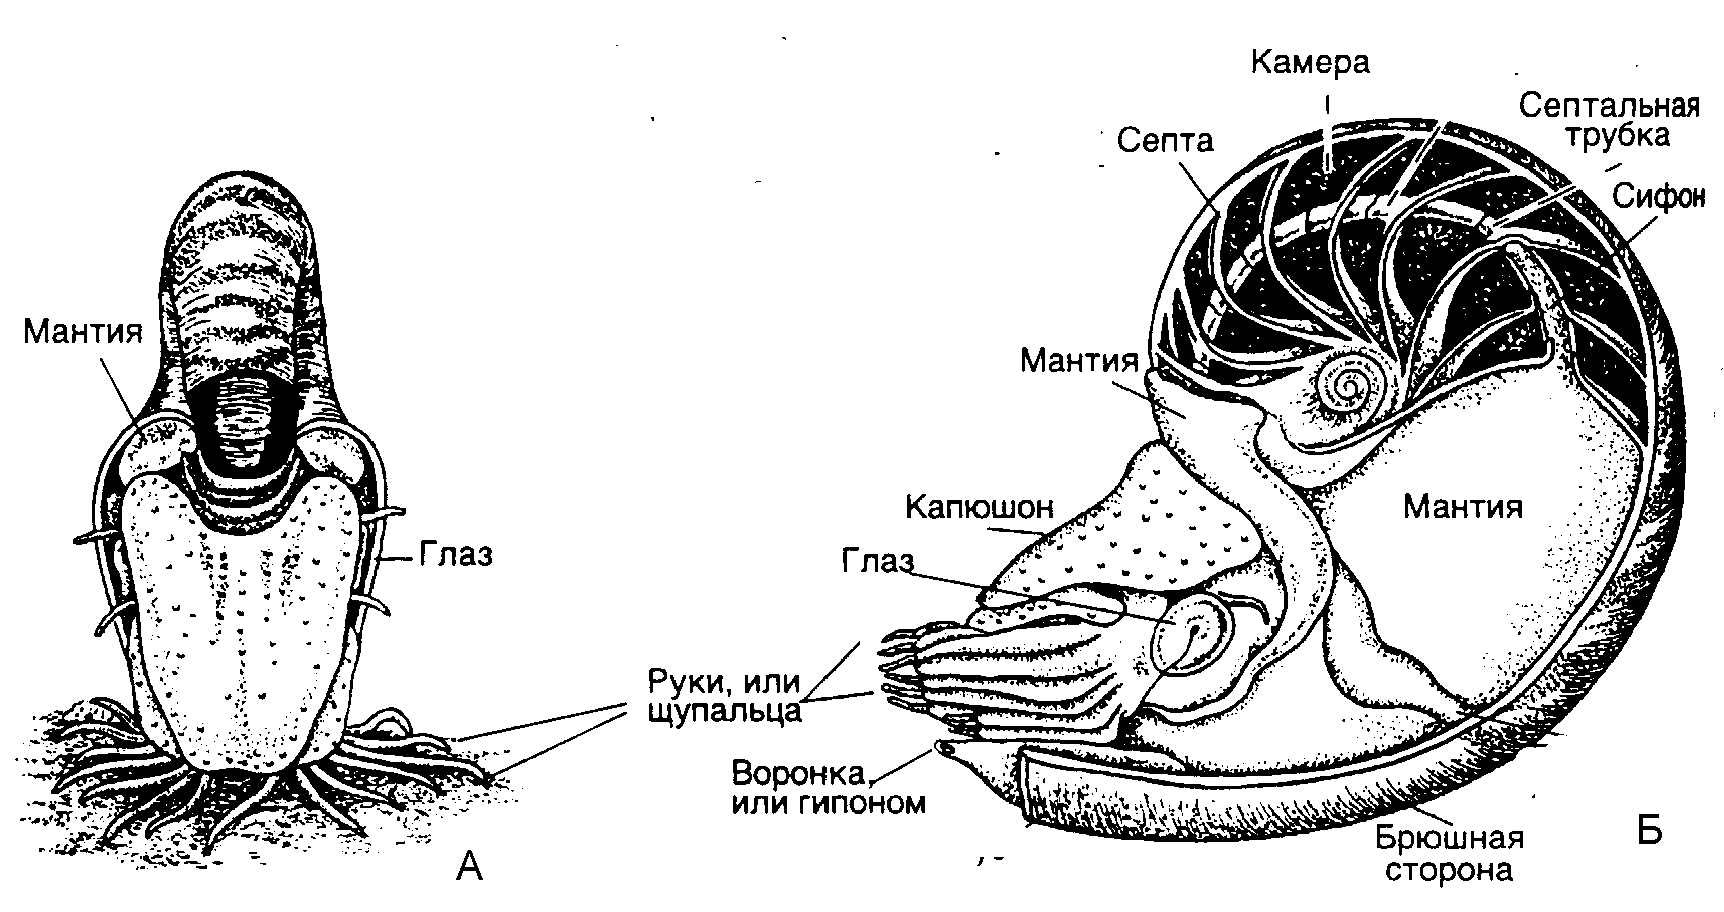 Тело нечленистое округлое поперечное. Головоногие моллюски строение. Строение Cefalopoda. Внутреннее строение Cefalopoda. Схема строения брюхоногого моллюска.